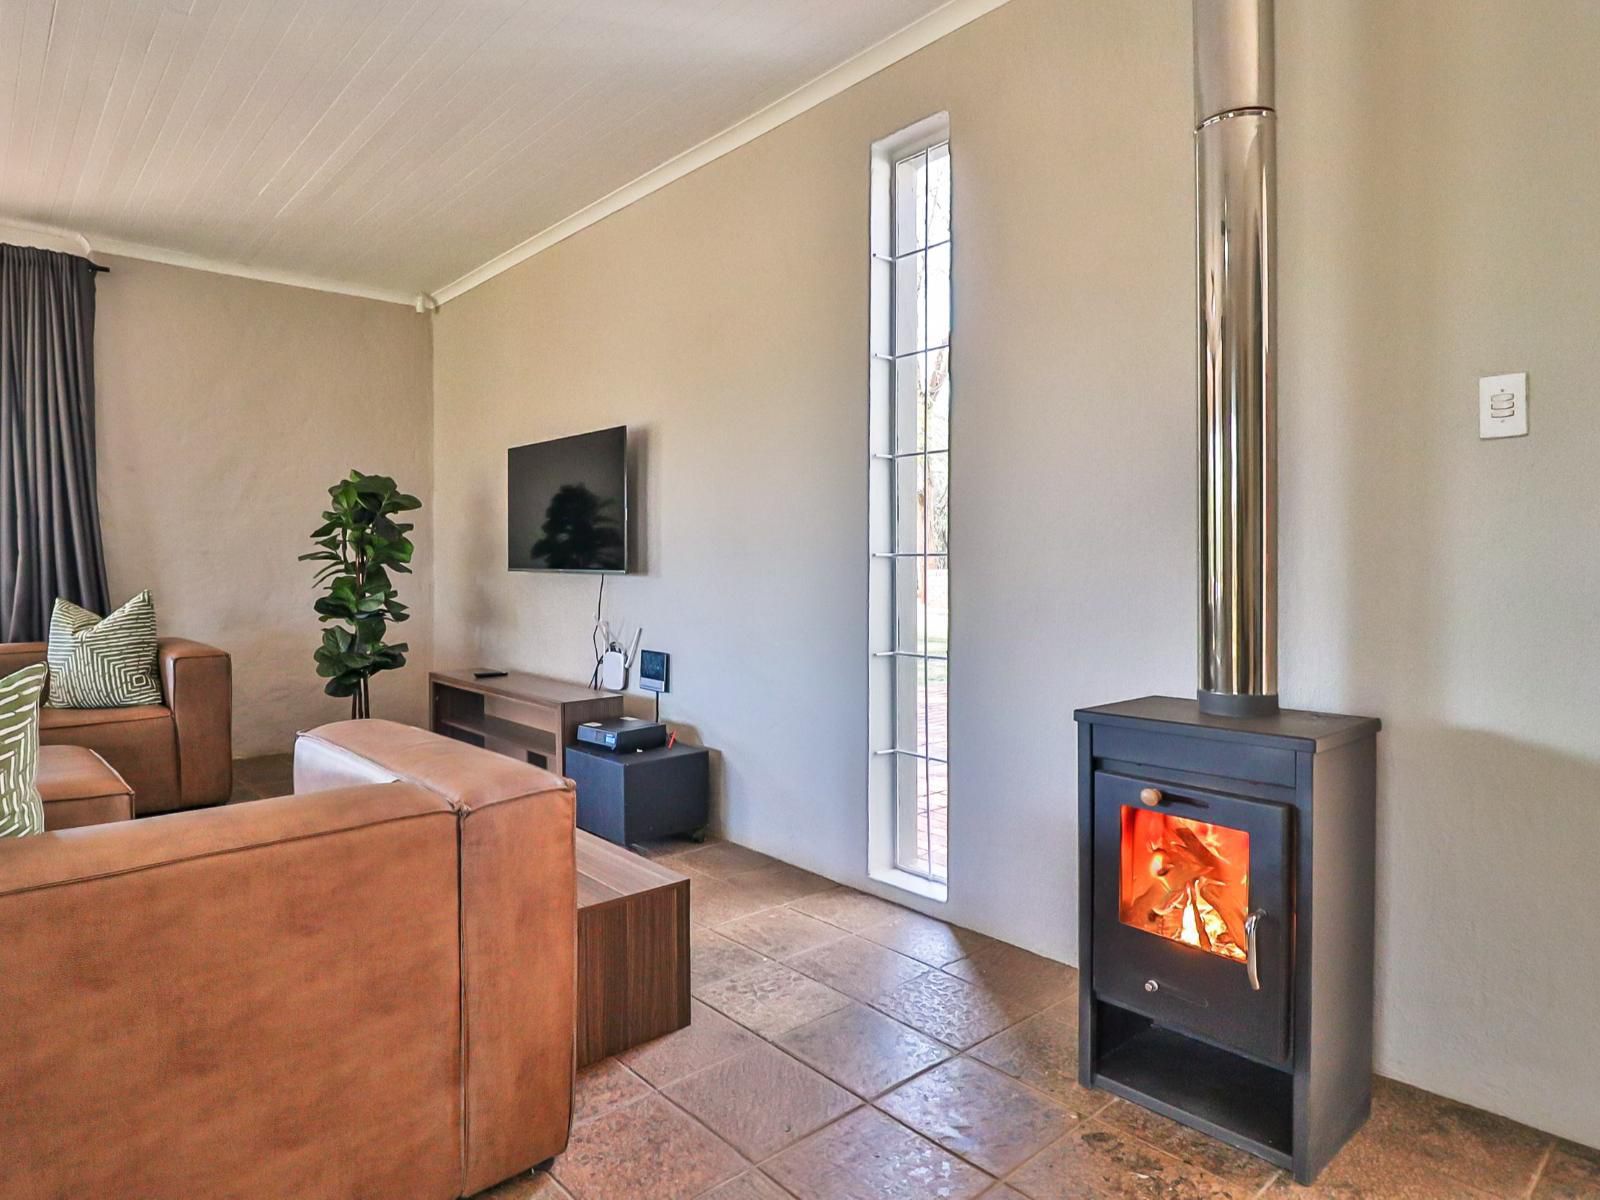 Featherwood Farm Rayton Gauteng Gauteng South Africa Fire, Nature, Fireplace, Living Room